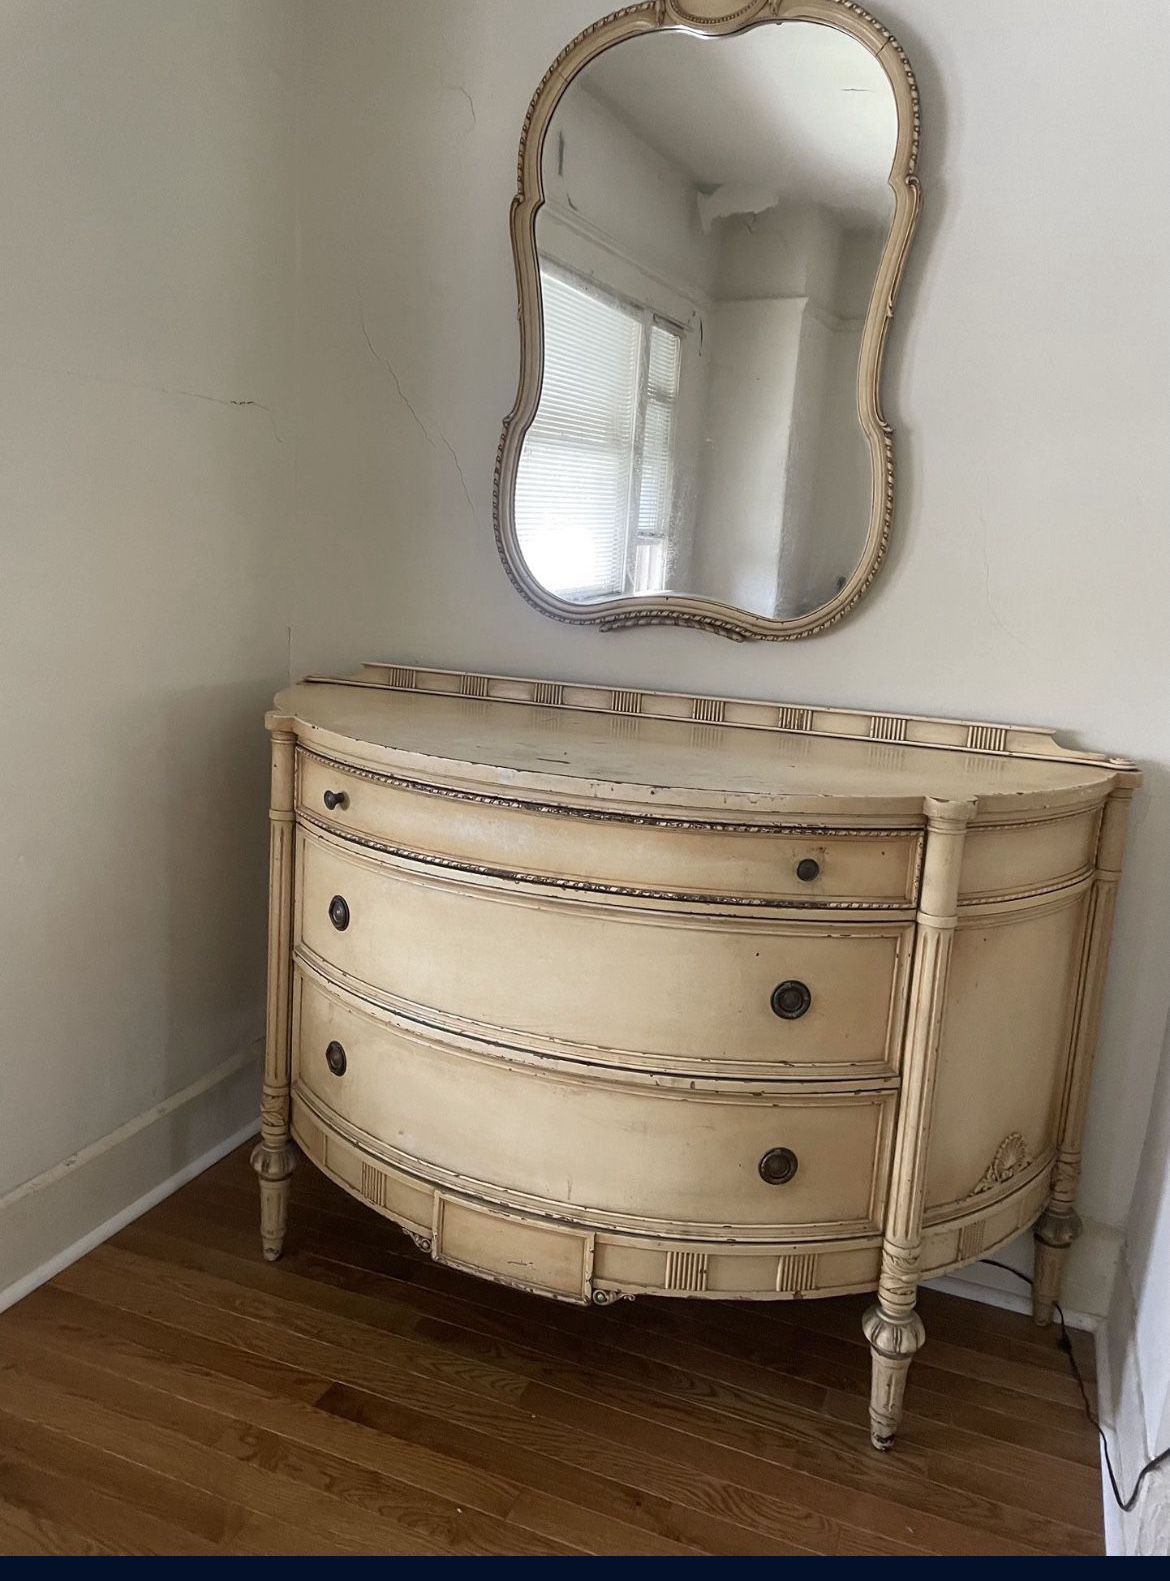 Antique dresser and mirror. Needs restoration.